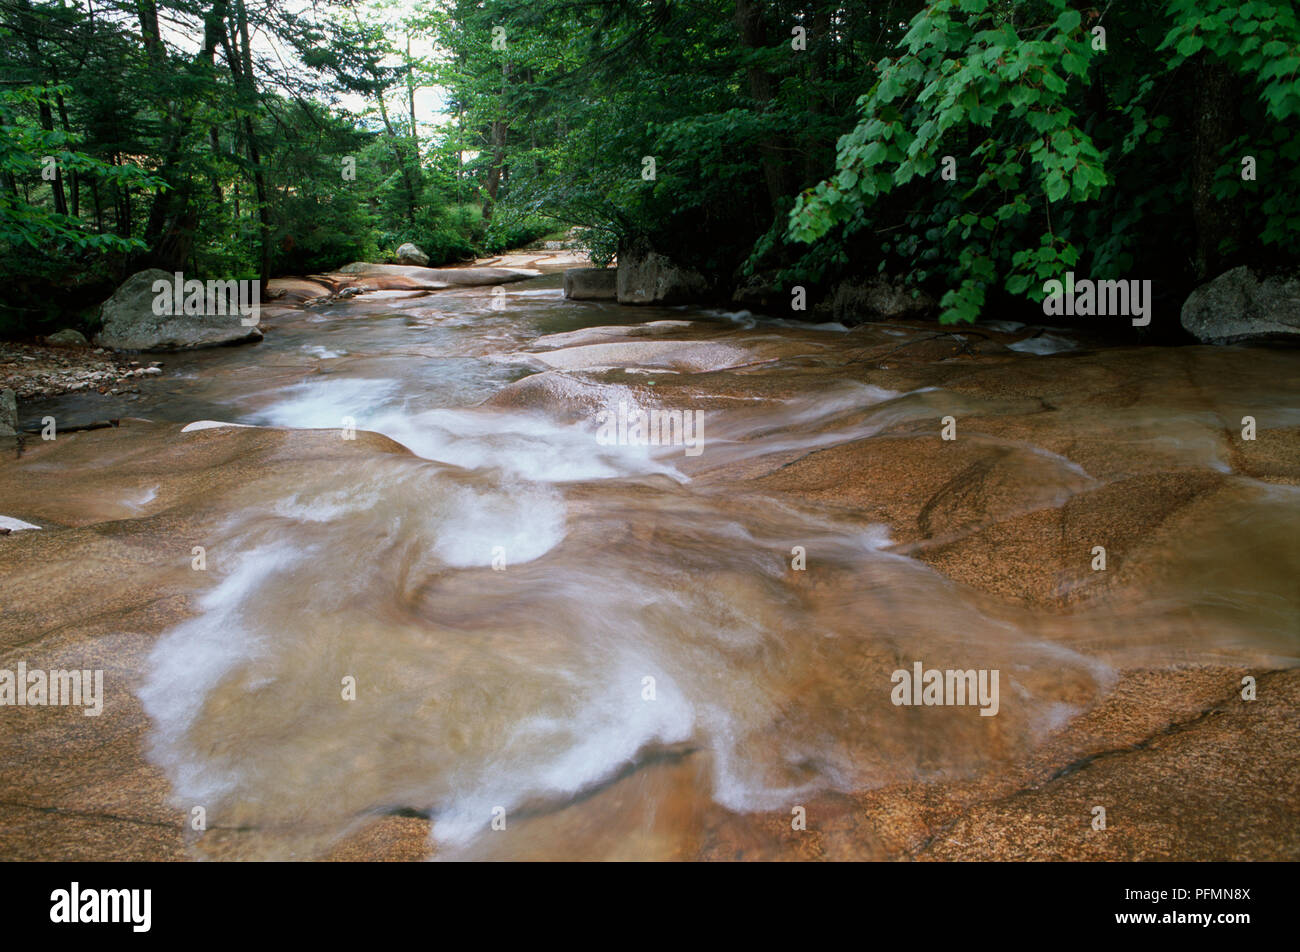 Stati Uniti d'America, New Hampshire, Franconia Notch, membro Parkl, cascata presso il bacino si svuota in una grande buca di granito. Foto Stock